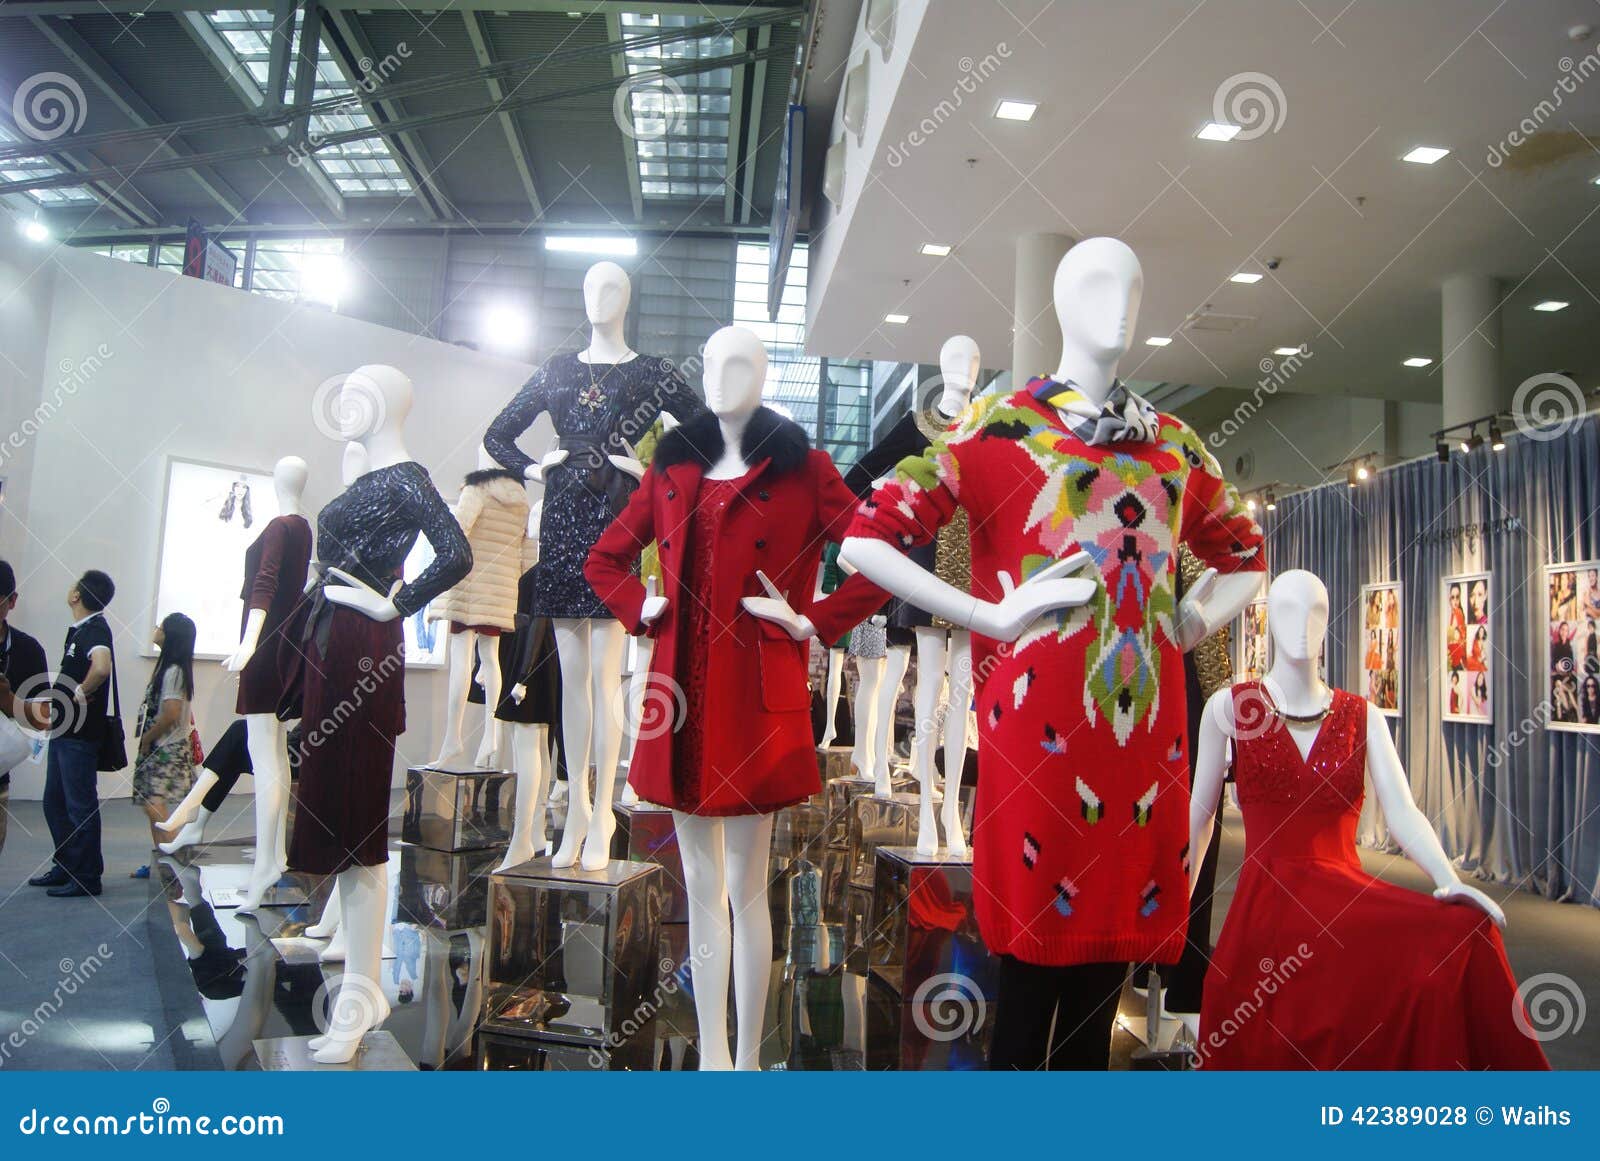 The fourteenth Chinese (Shenzhen) international brand clothing &amp; Accessories Fair landscape. The exhibition hall of Shenzhen Exhibition Center, fourteenth, Chinese (Shenzhen) international brand clothing &amp; Accessories Fair landscape.